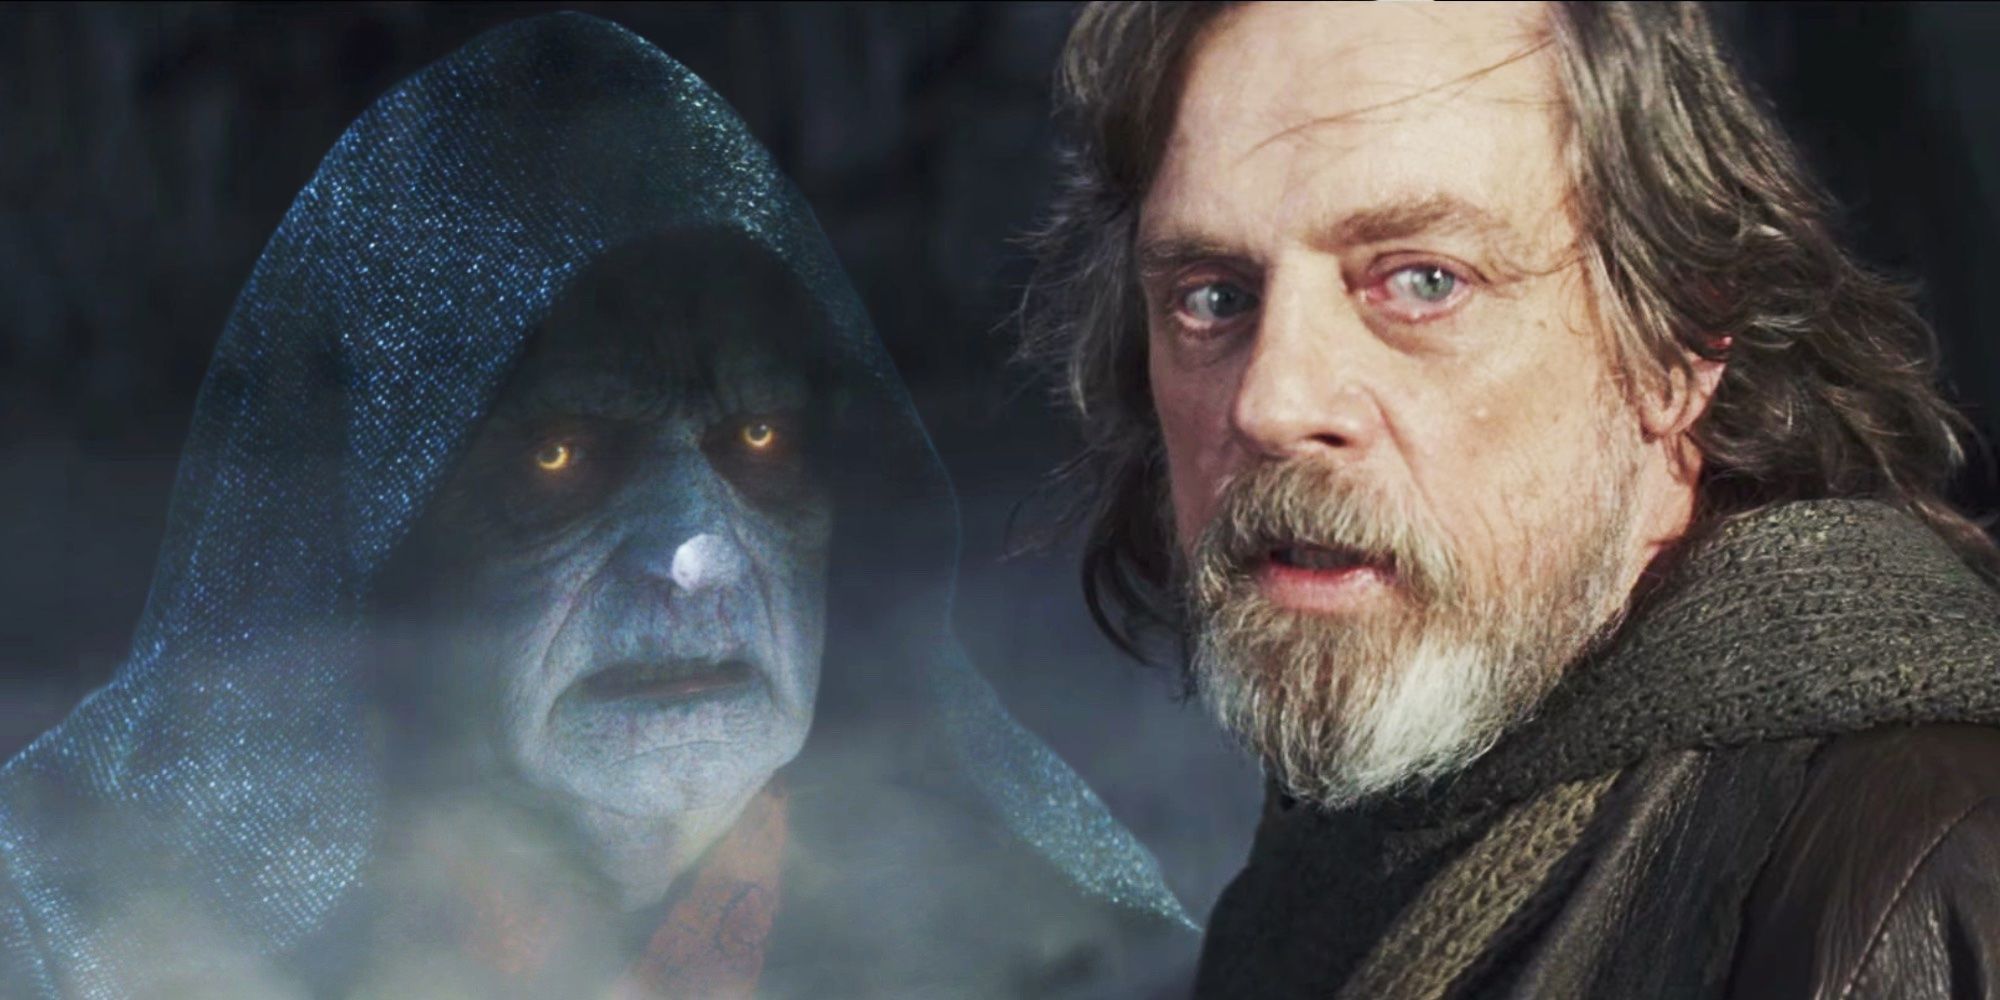 Emperor Palpatine in Star Wars: Episode IX - The Rise of Skywalker and Luke Skywalker in Star Wars: Episode VIII - The Last Jedi